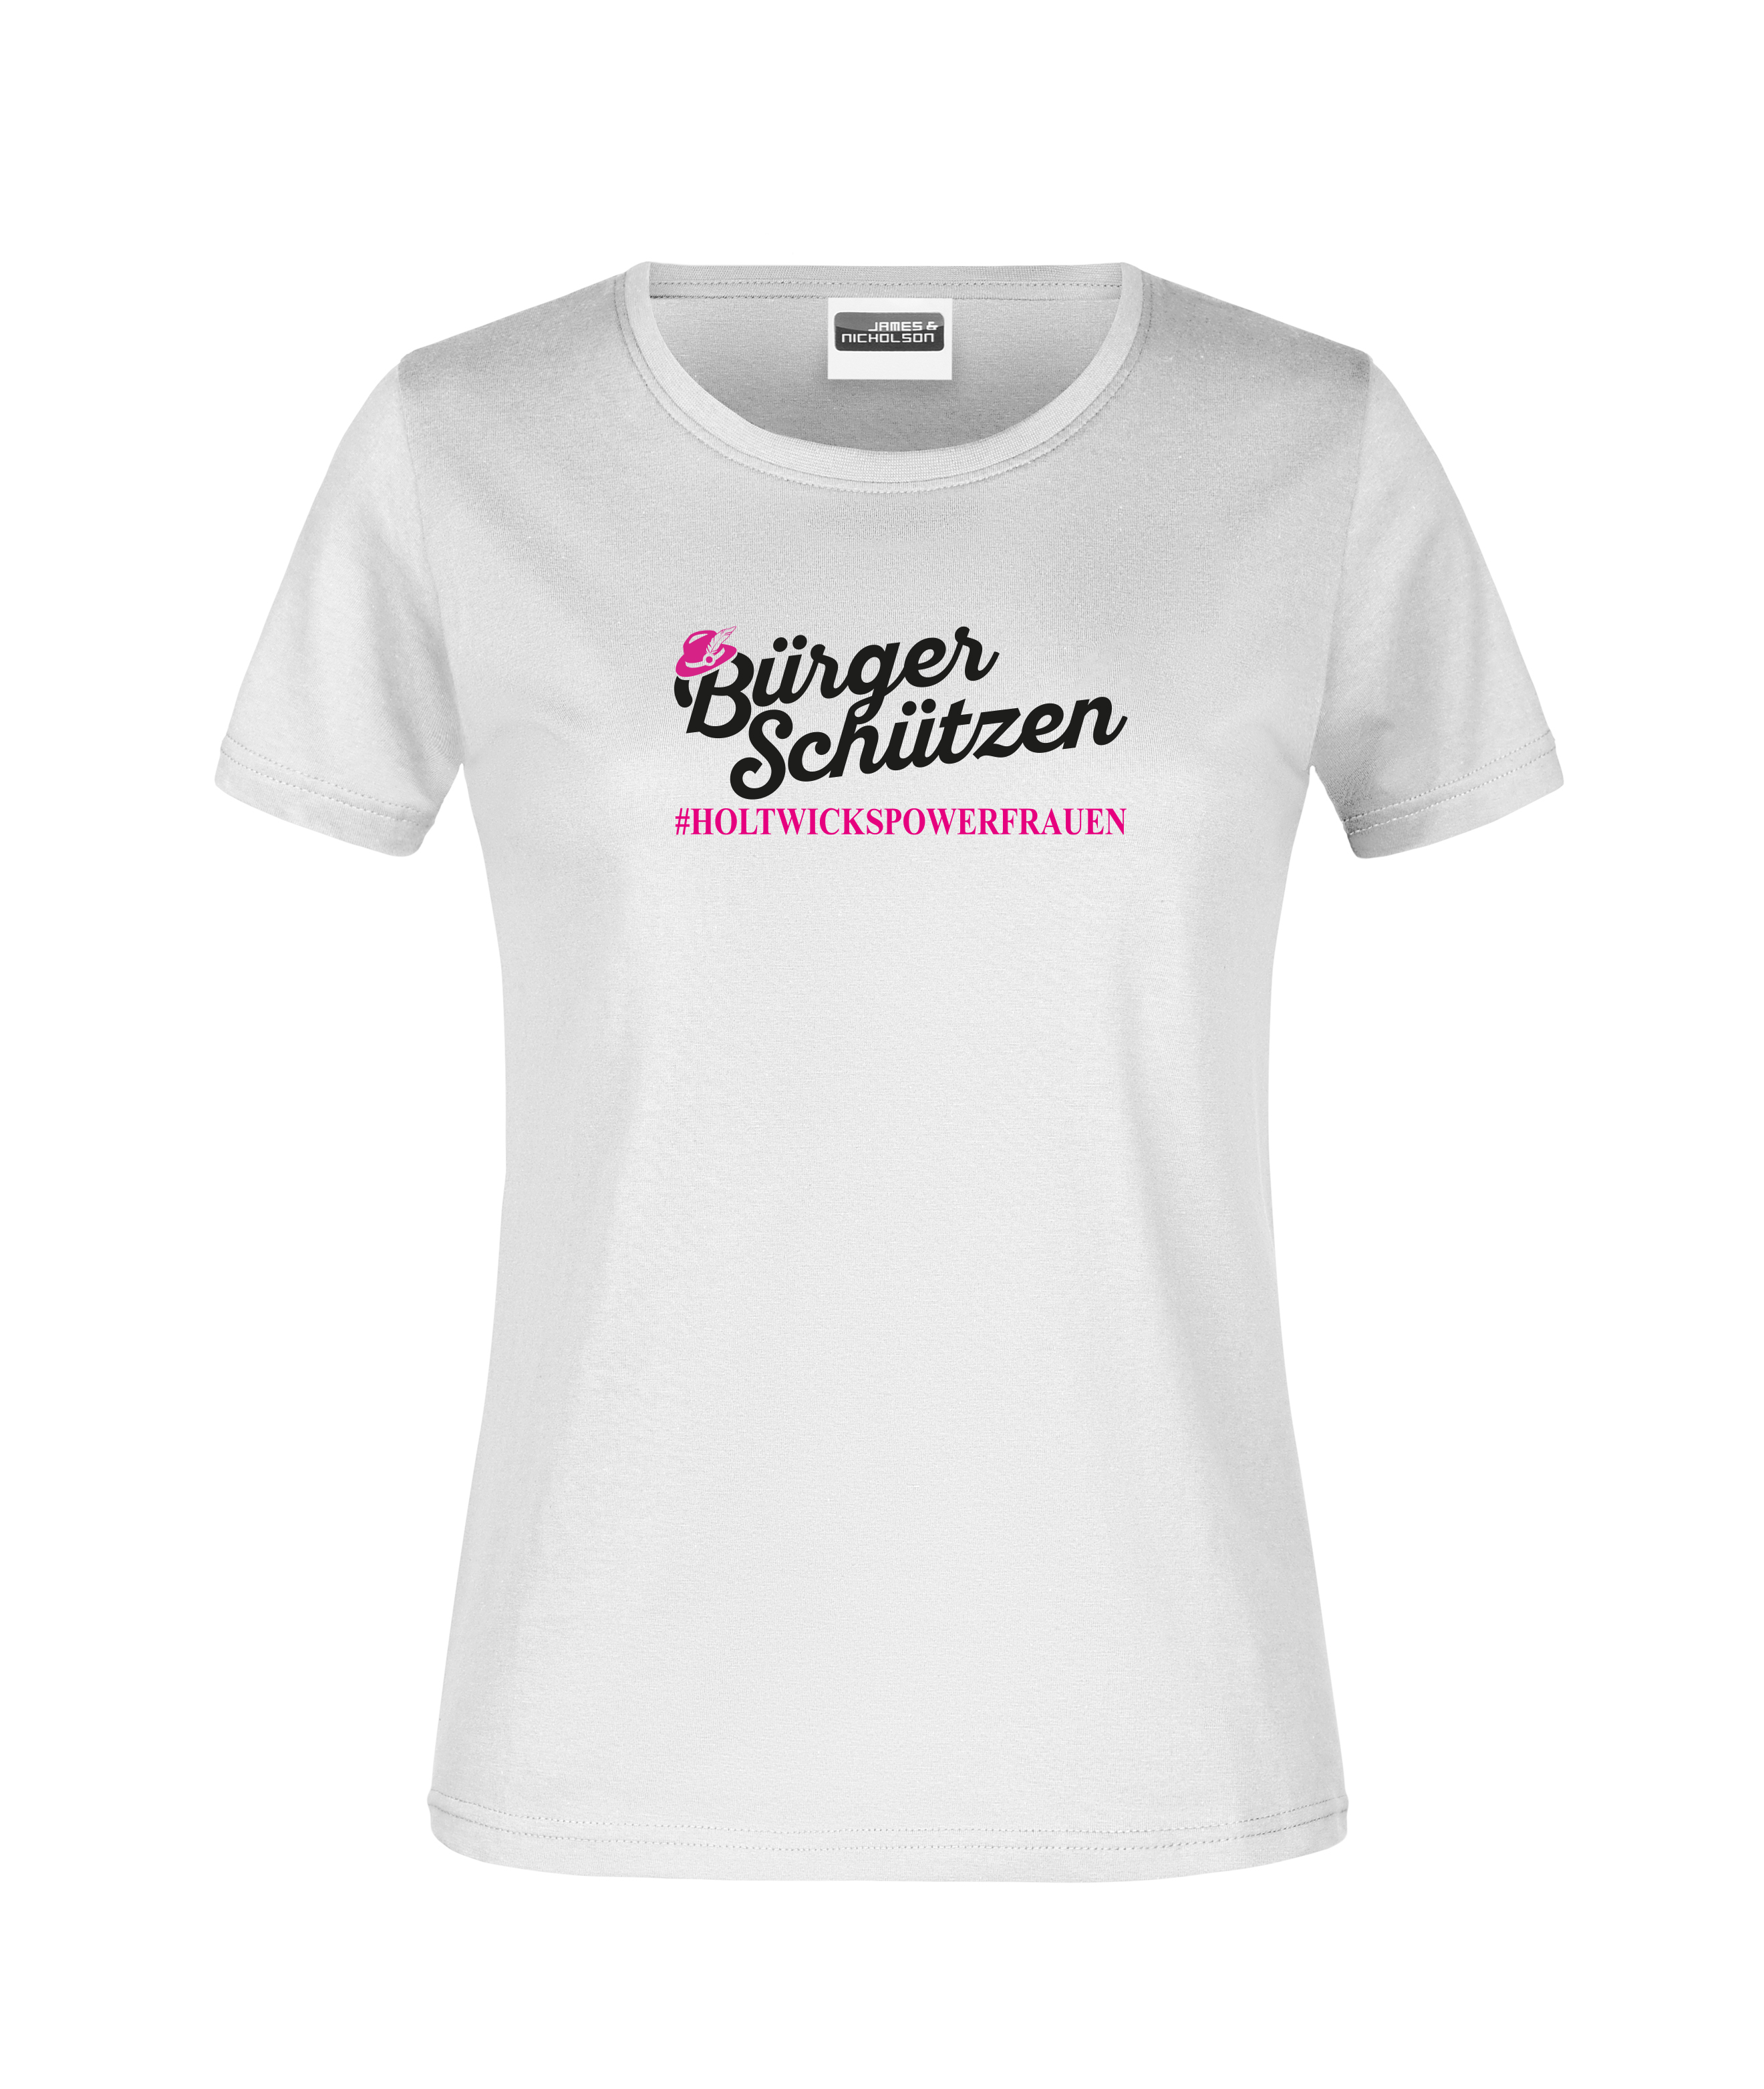 "#Holtwickspowerfrauen" - Damen-T-Shirt